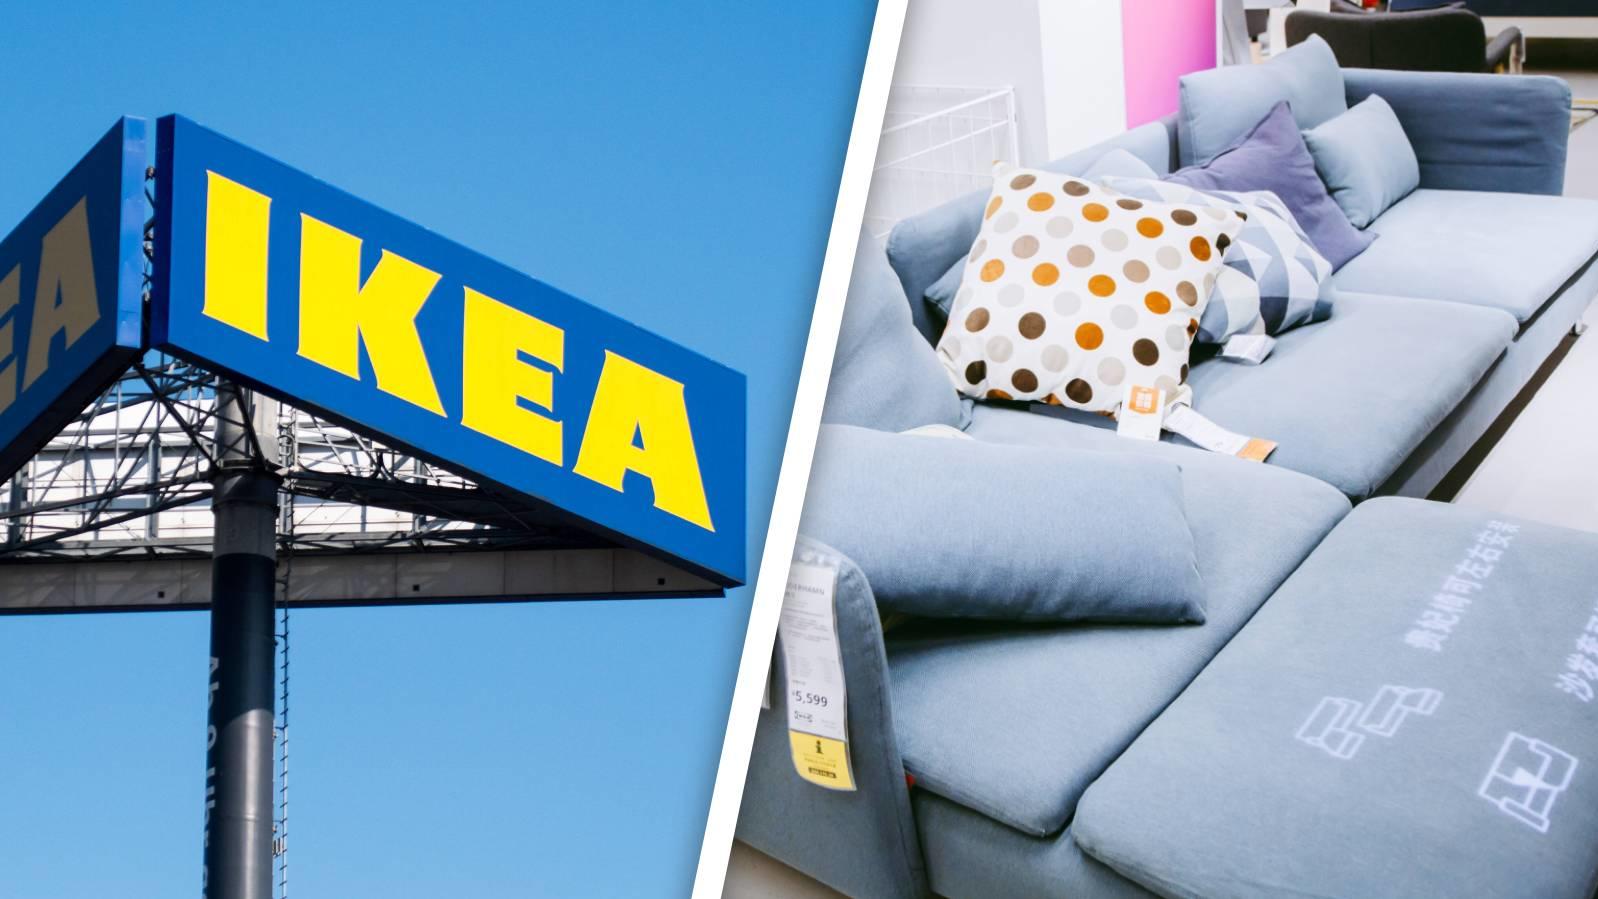 Buyback Friday Aktion Ikea Kauft Bald Gebrauchte Mobel Zuruck